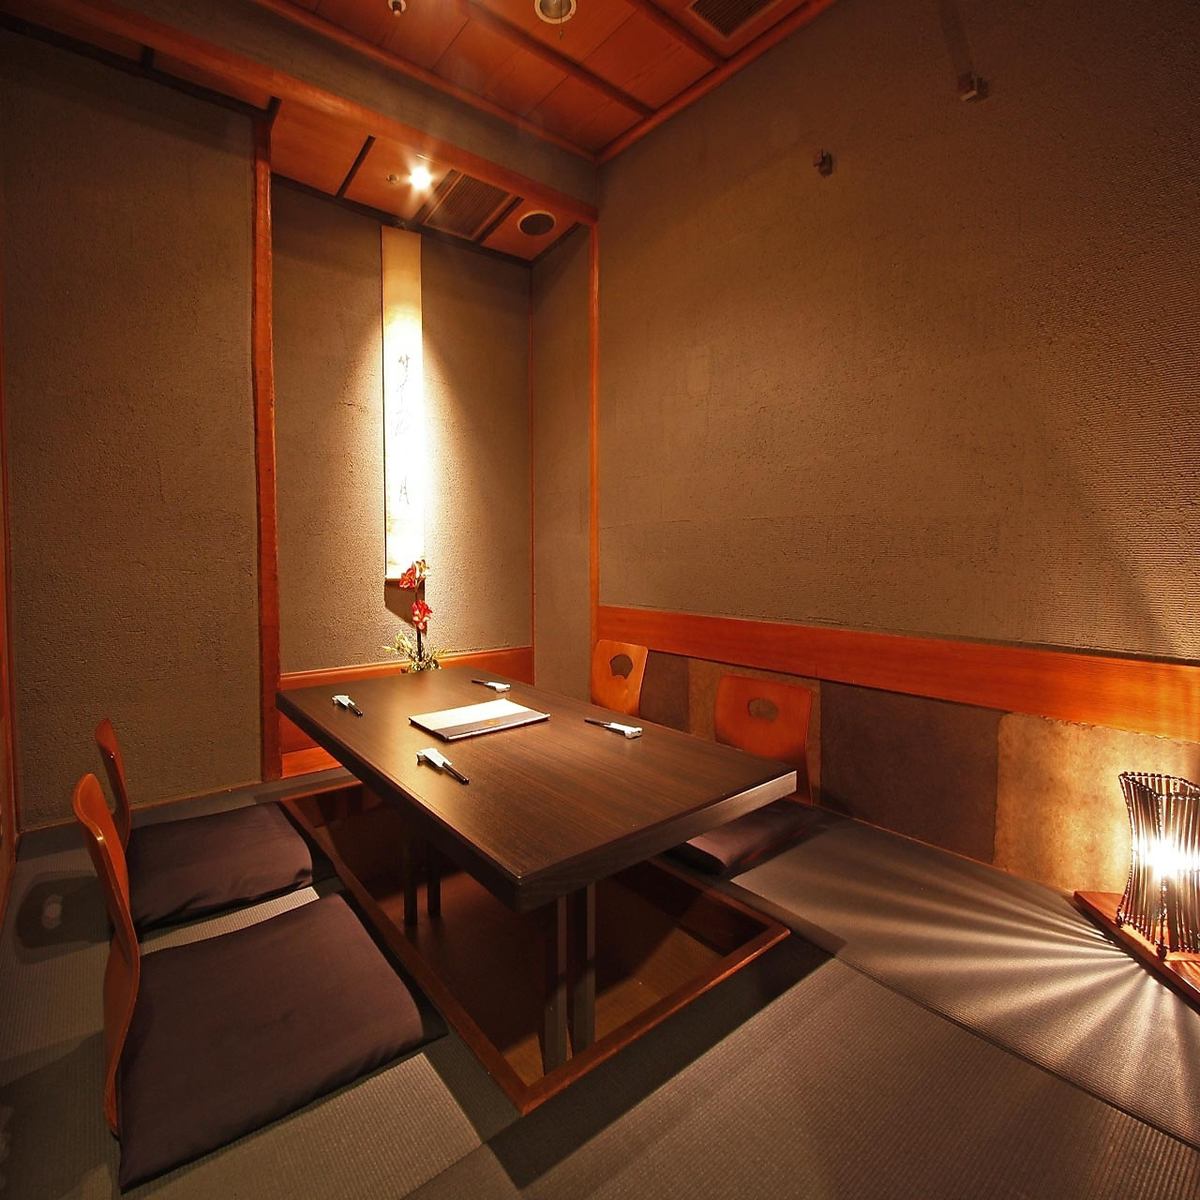 一个重要的用餐聚会是“成人轻松的日式房间”和“特色菜”